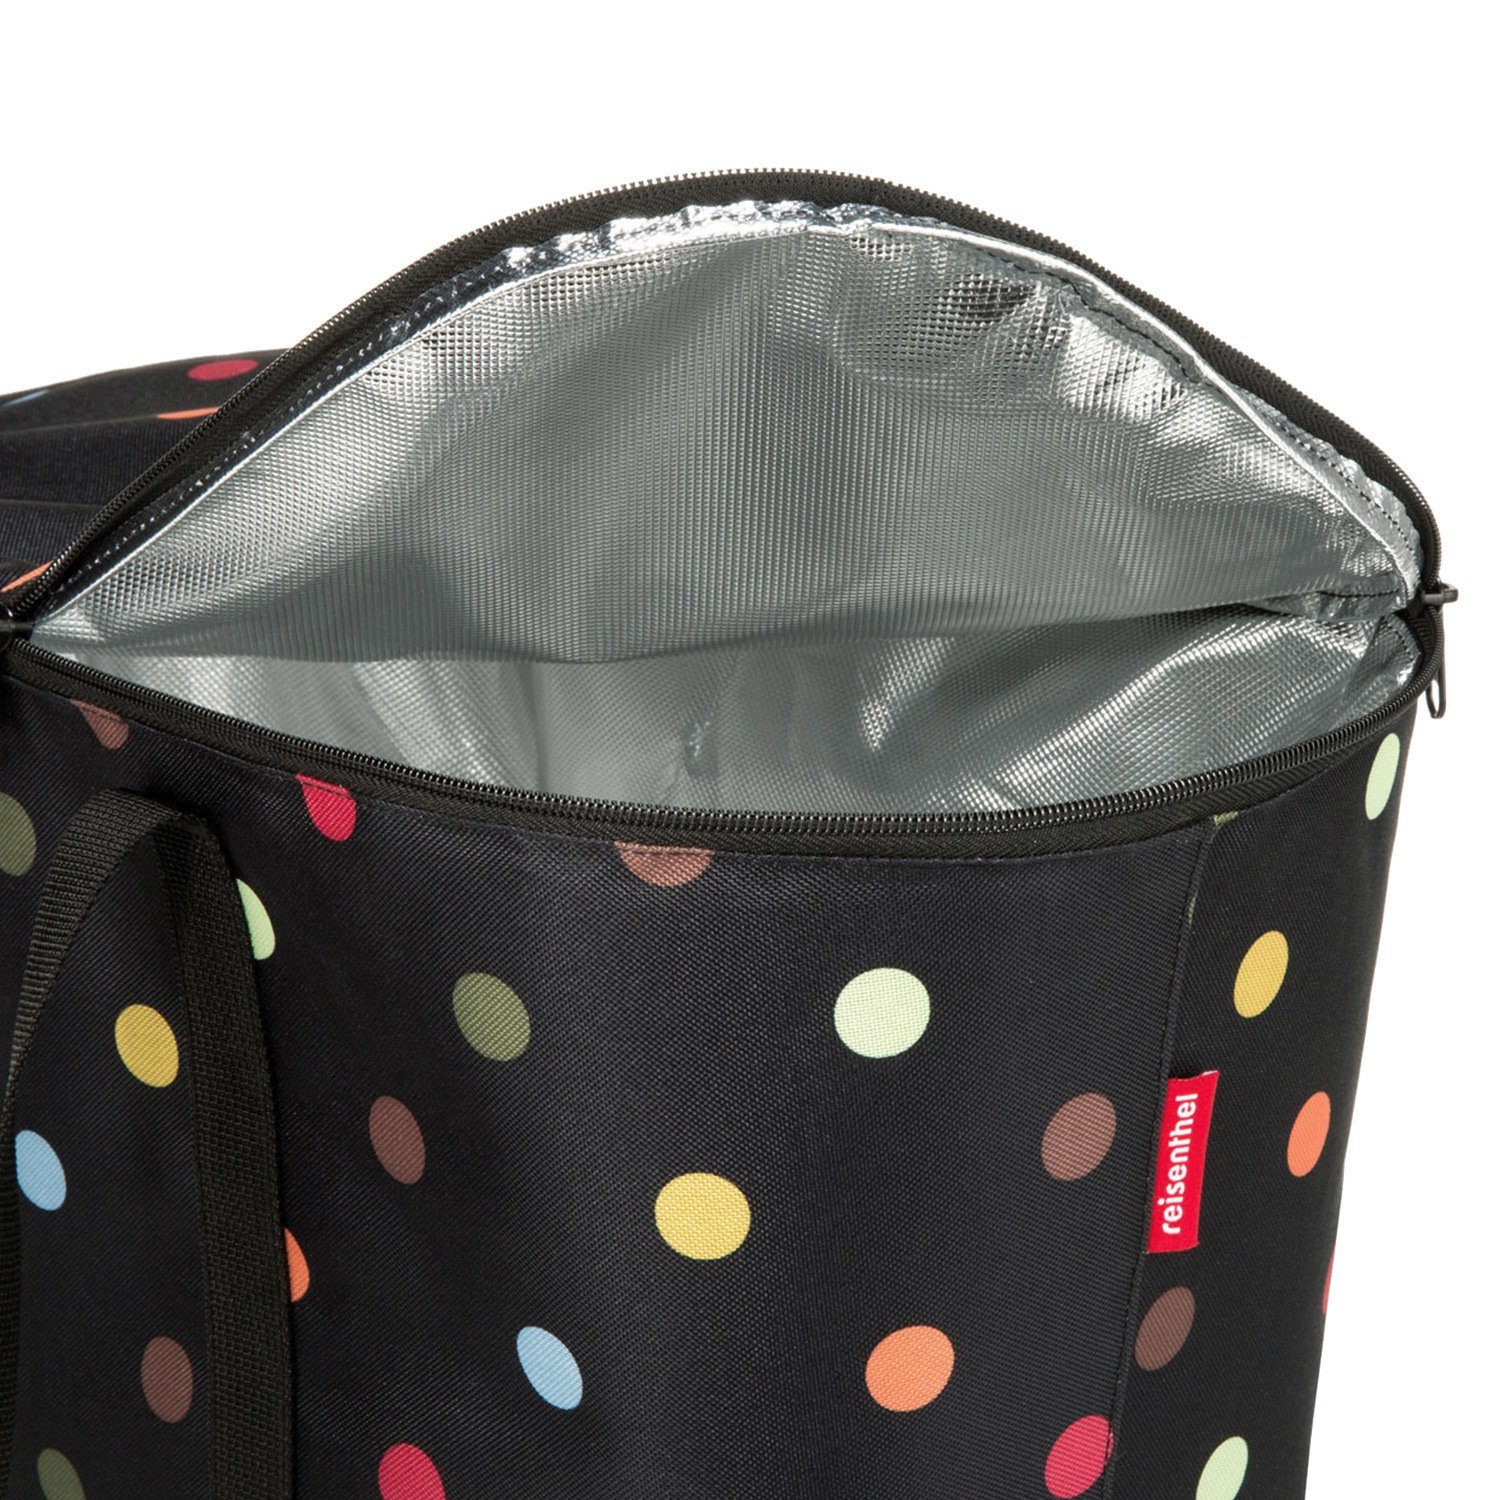 Dekor mixed black Kühltasche Thermo Wahl REISENTHEL® coolerbag l Farbe - zur Picknickkorb Einkaufskorb dots 20